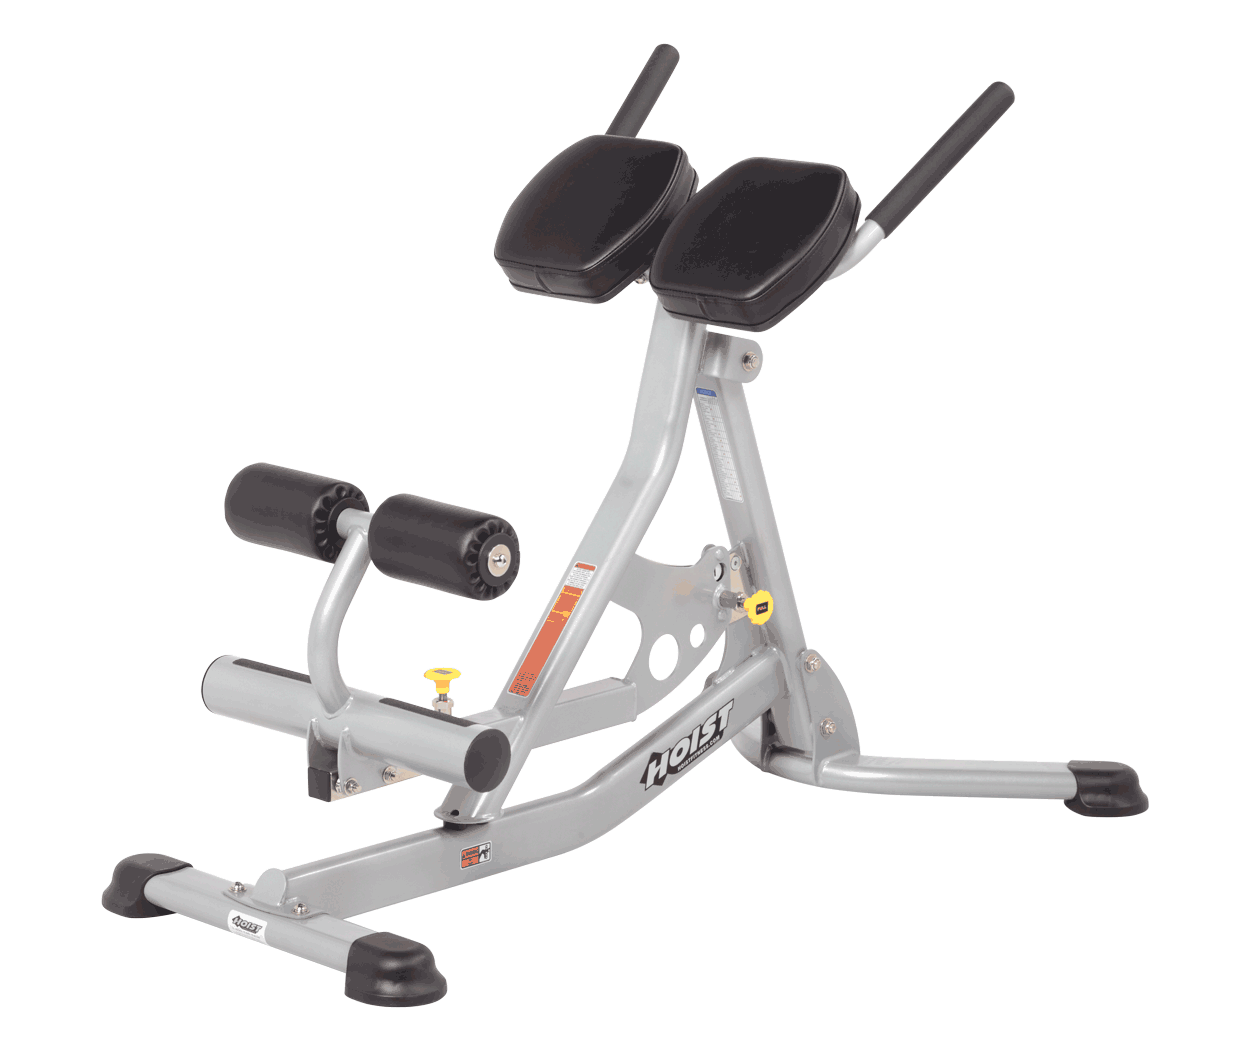 CF-3160 Banc ajustable commercial Hoist – Body Gym équipements